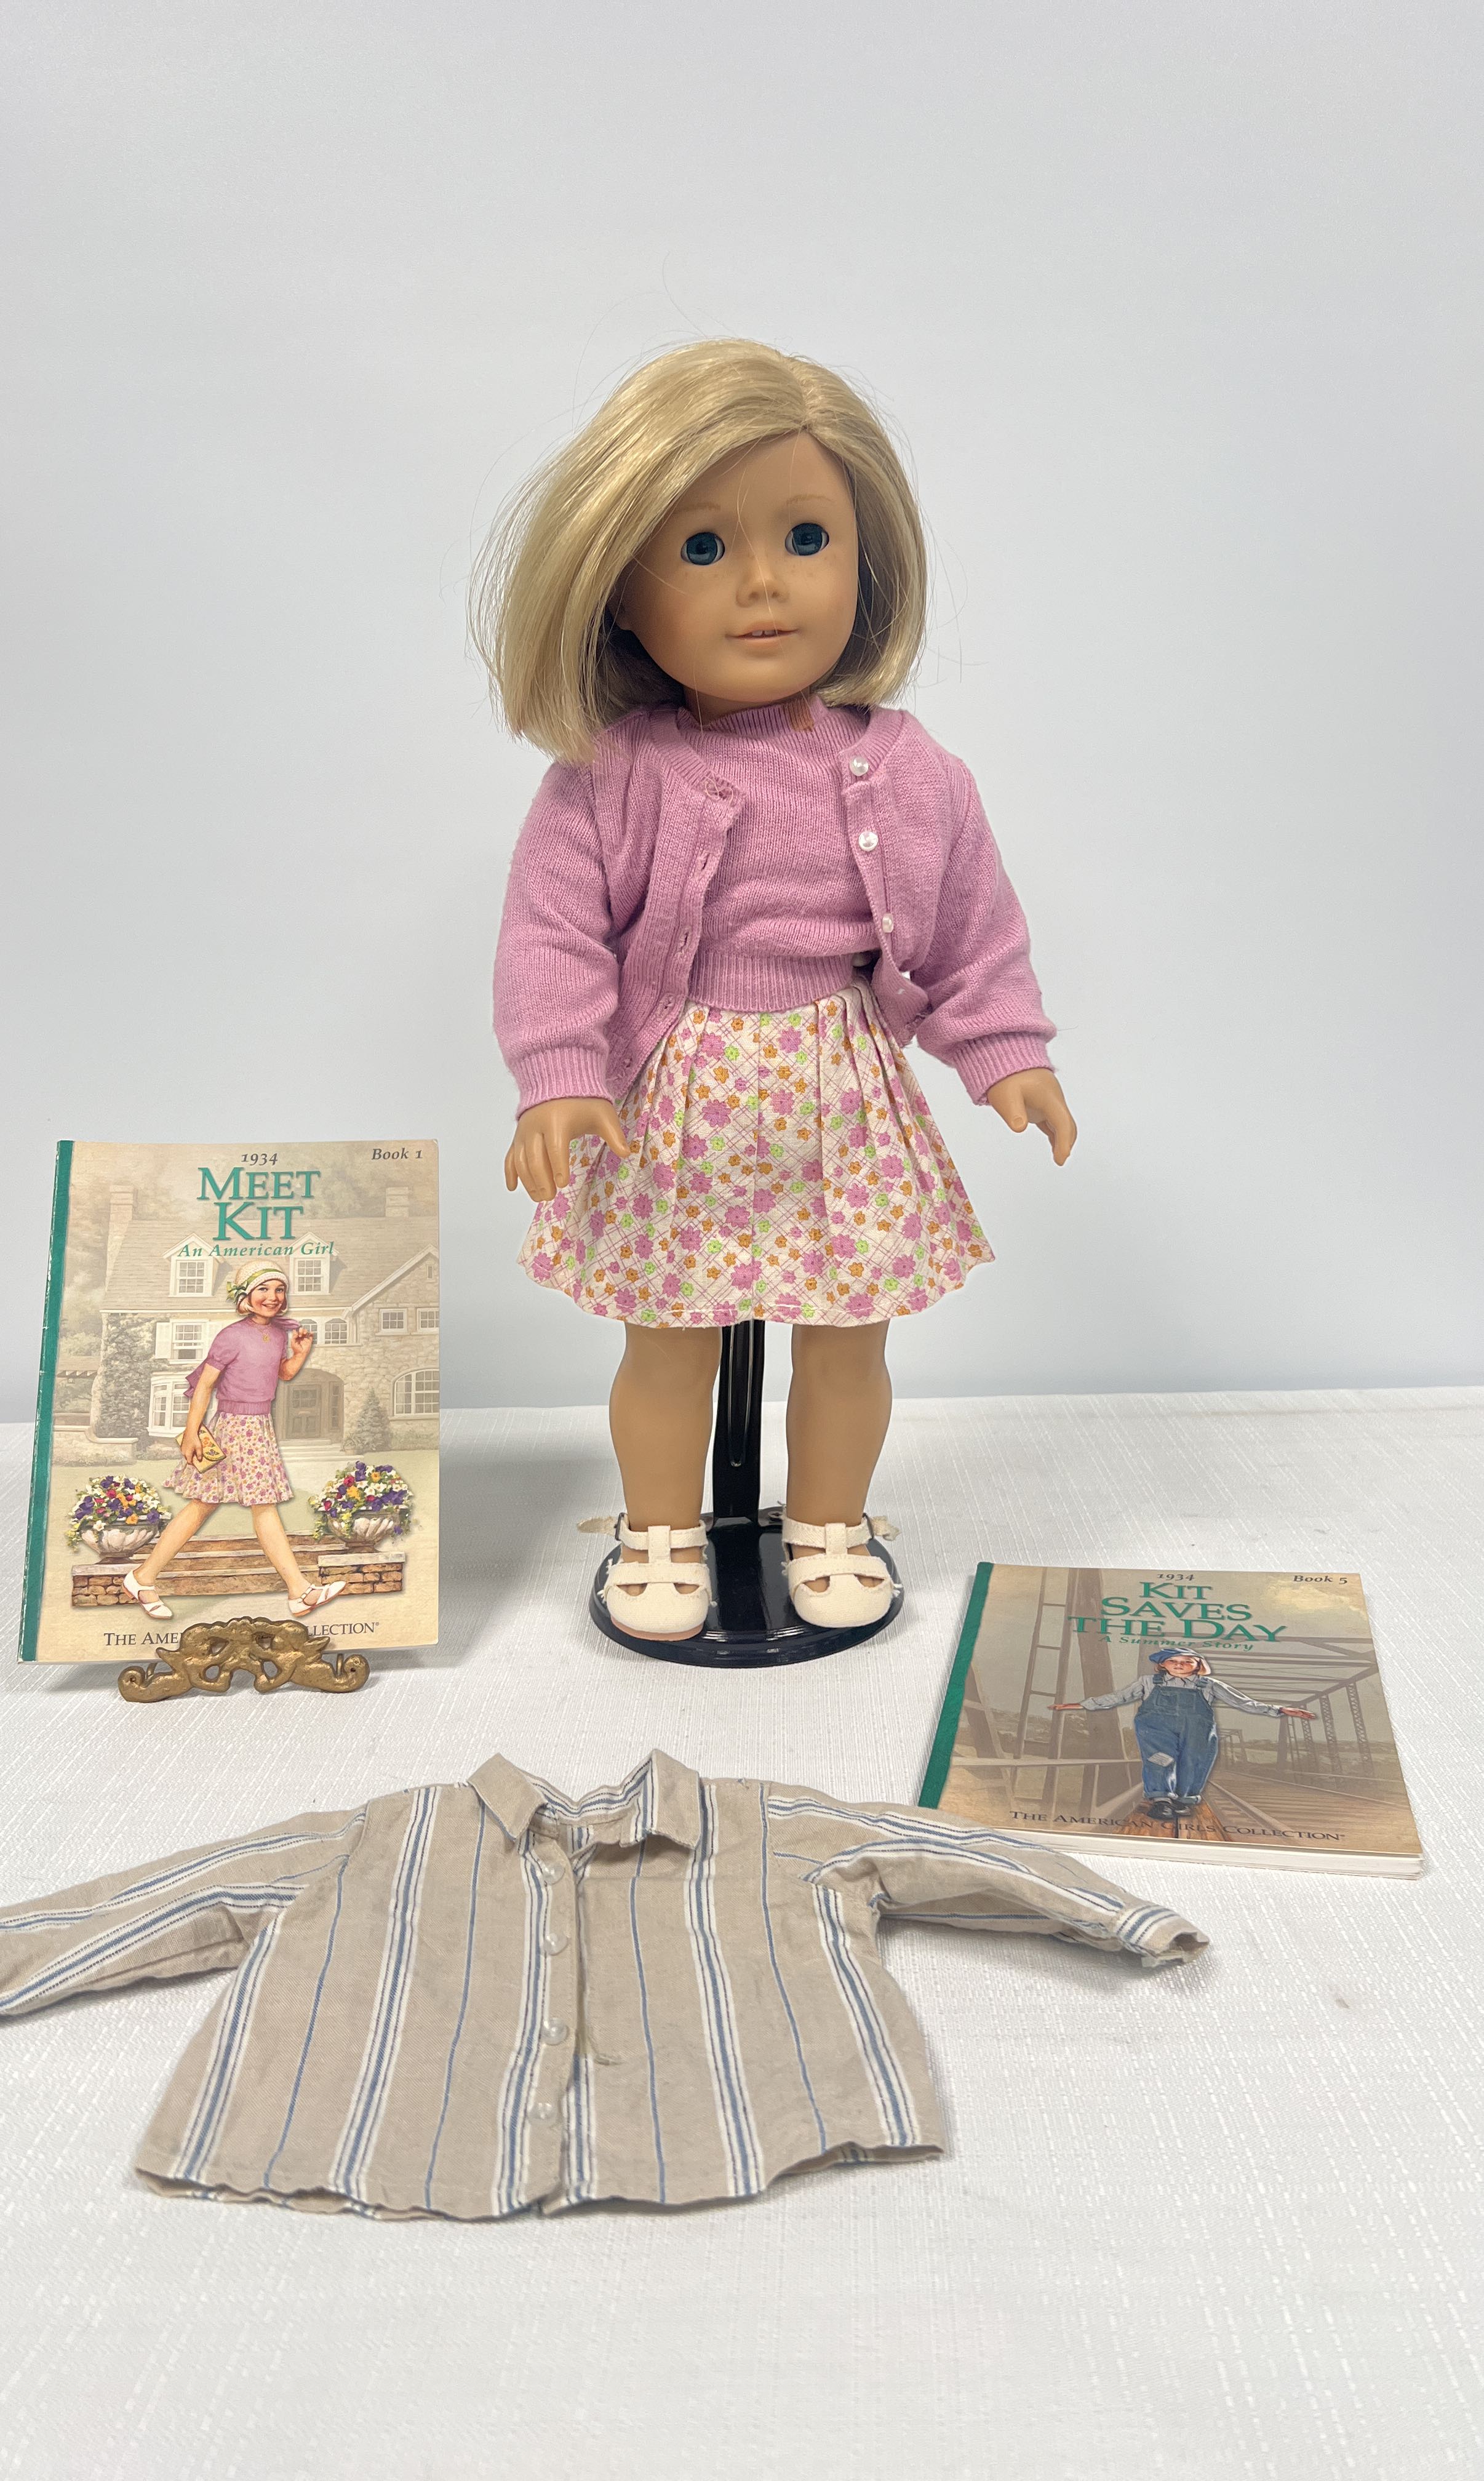 American-Girl-Doll-Pleasent-Company-Kit-Kittredge